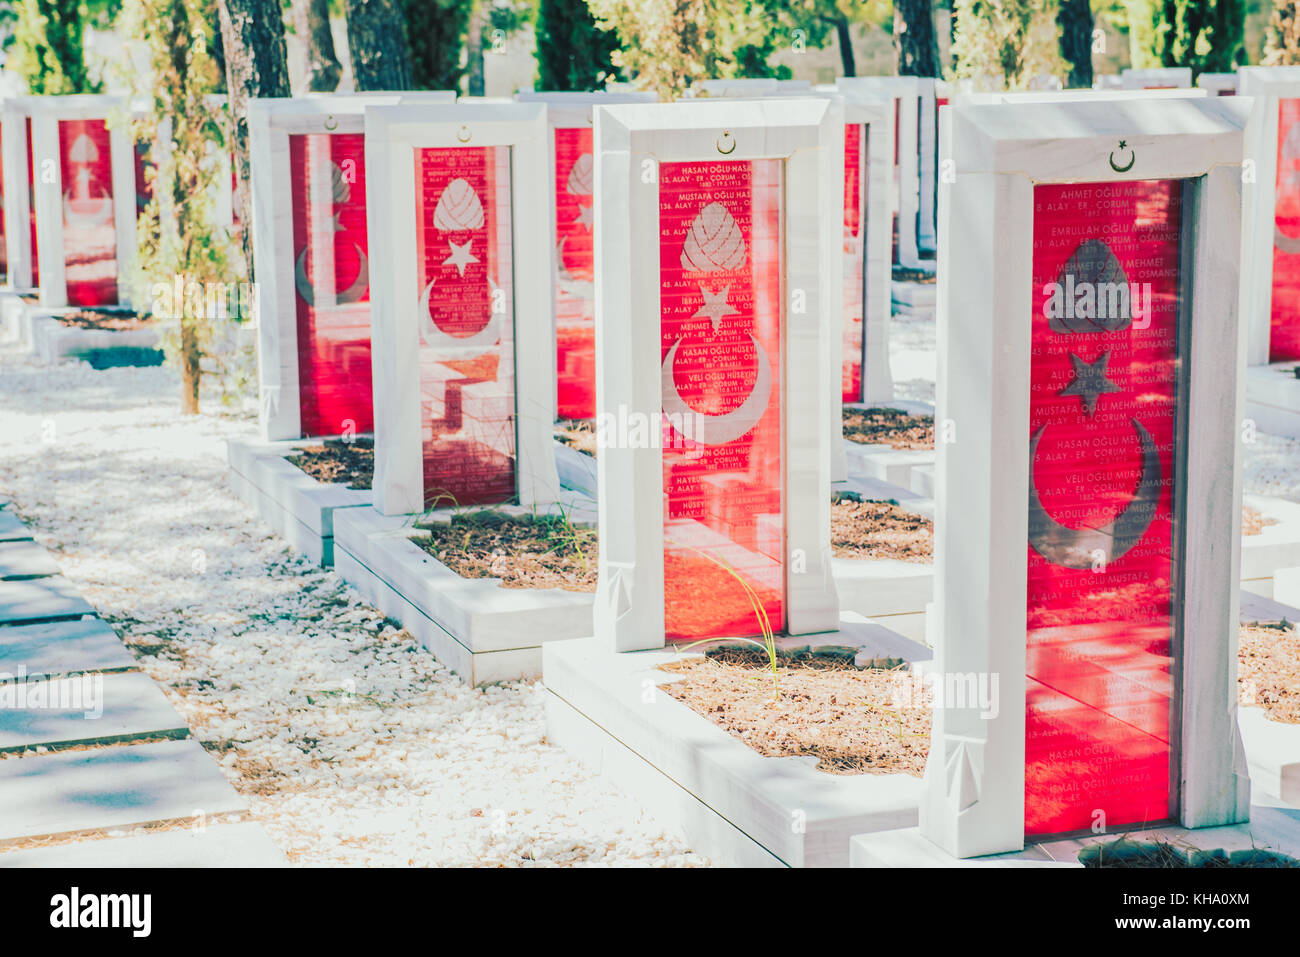 Mémorial des martyrs de canakkale Military Cemetery est un monument commémorant le service d'environ soldats turcs qui ont participé à la bataille de g Banque D'Images